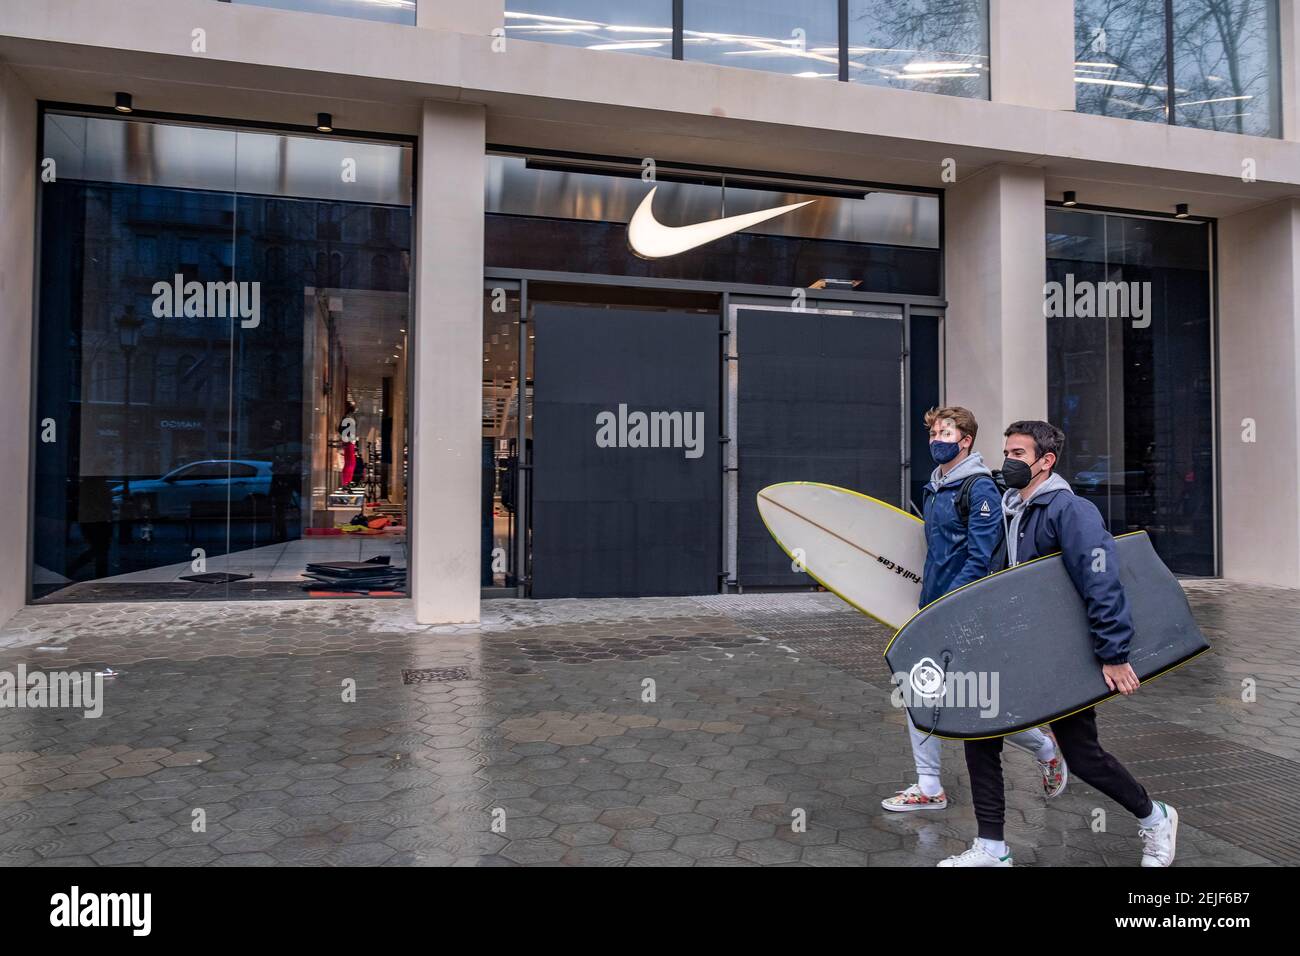 Barcelone, Espagne. 22 février 2021. Deux jeunes hommes avec planches de  surf marchent devant le magasin Nike à Passeig de Gràcia, Vu avec des  protections anti-vandalisme dans leurs fenêtres.plus de 50 magasins